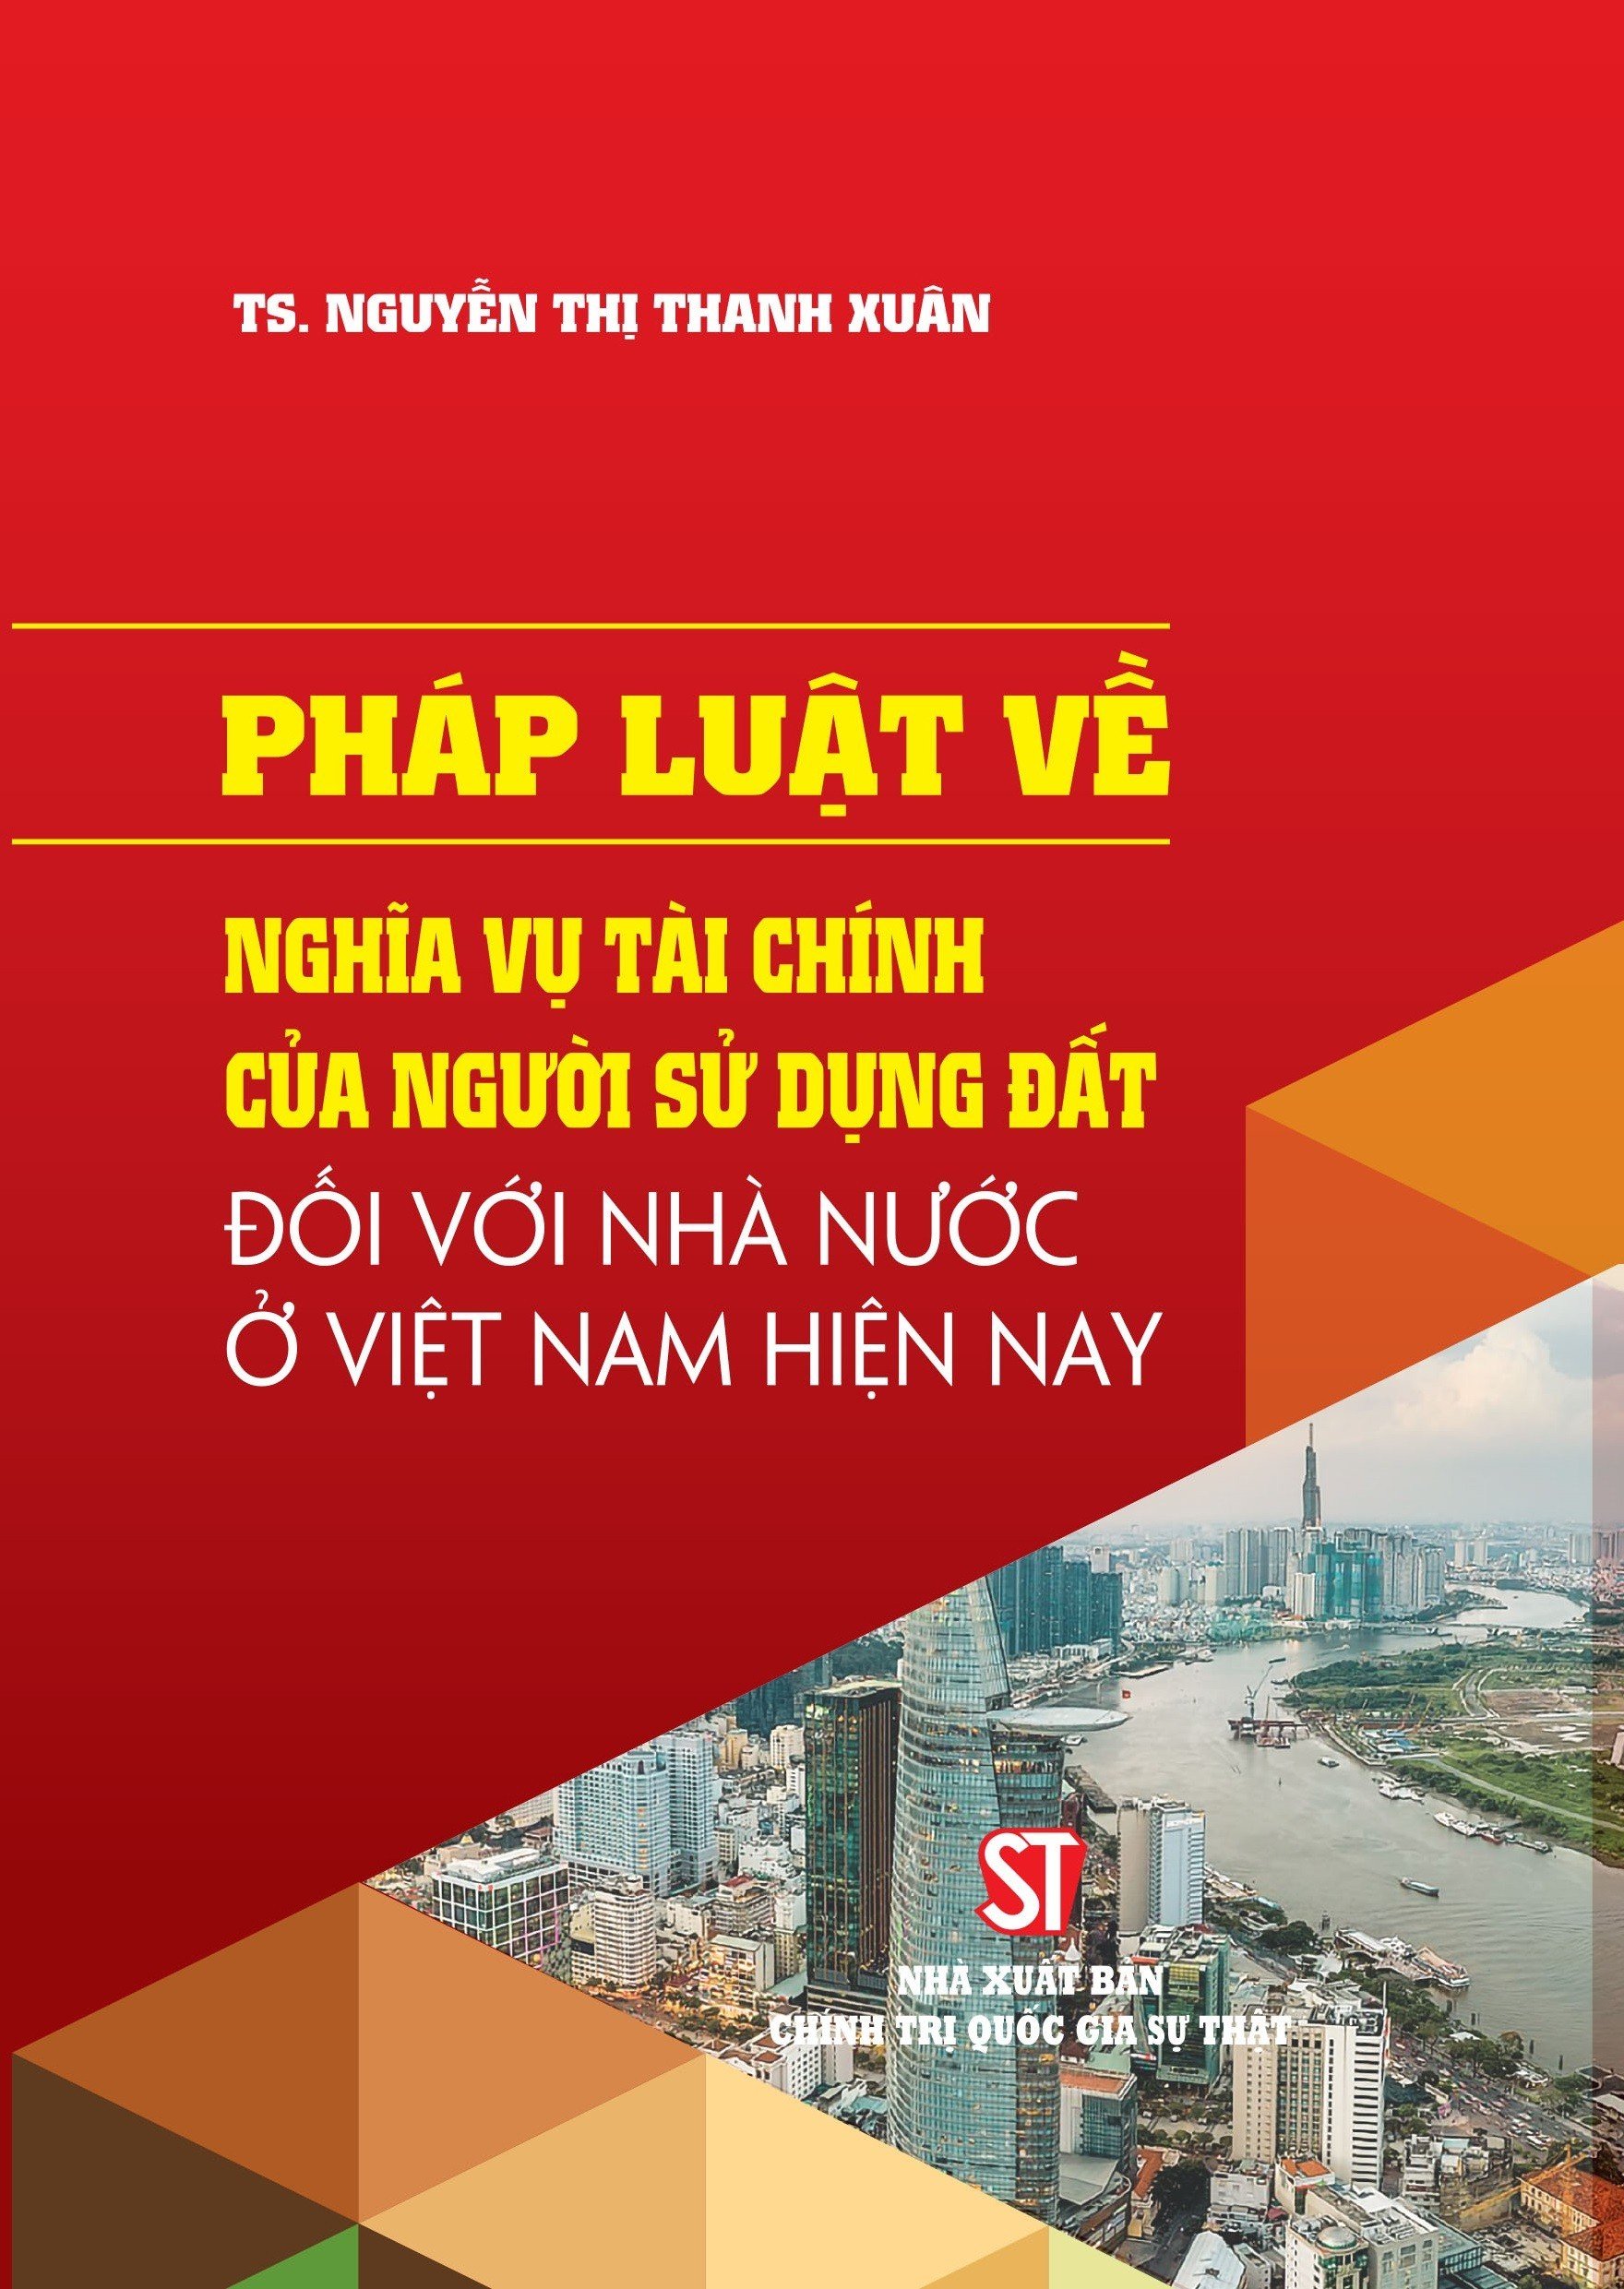  Pháp luật về nghĩa vụ tài chính của người sử dụng đất đối với Nhà nước ở Việt Nam hiện nay 